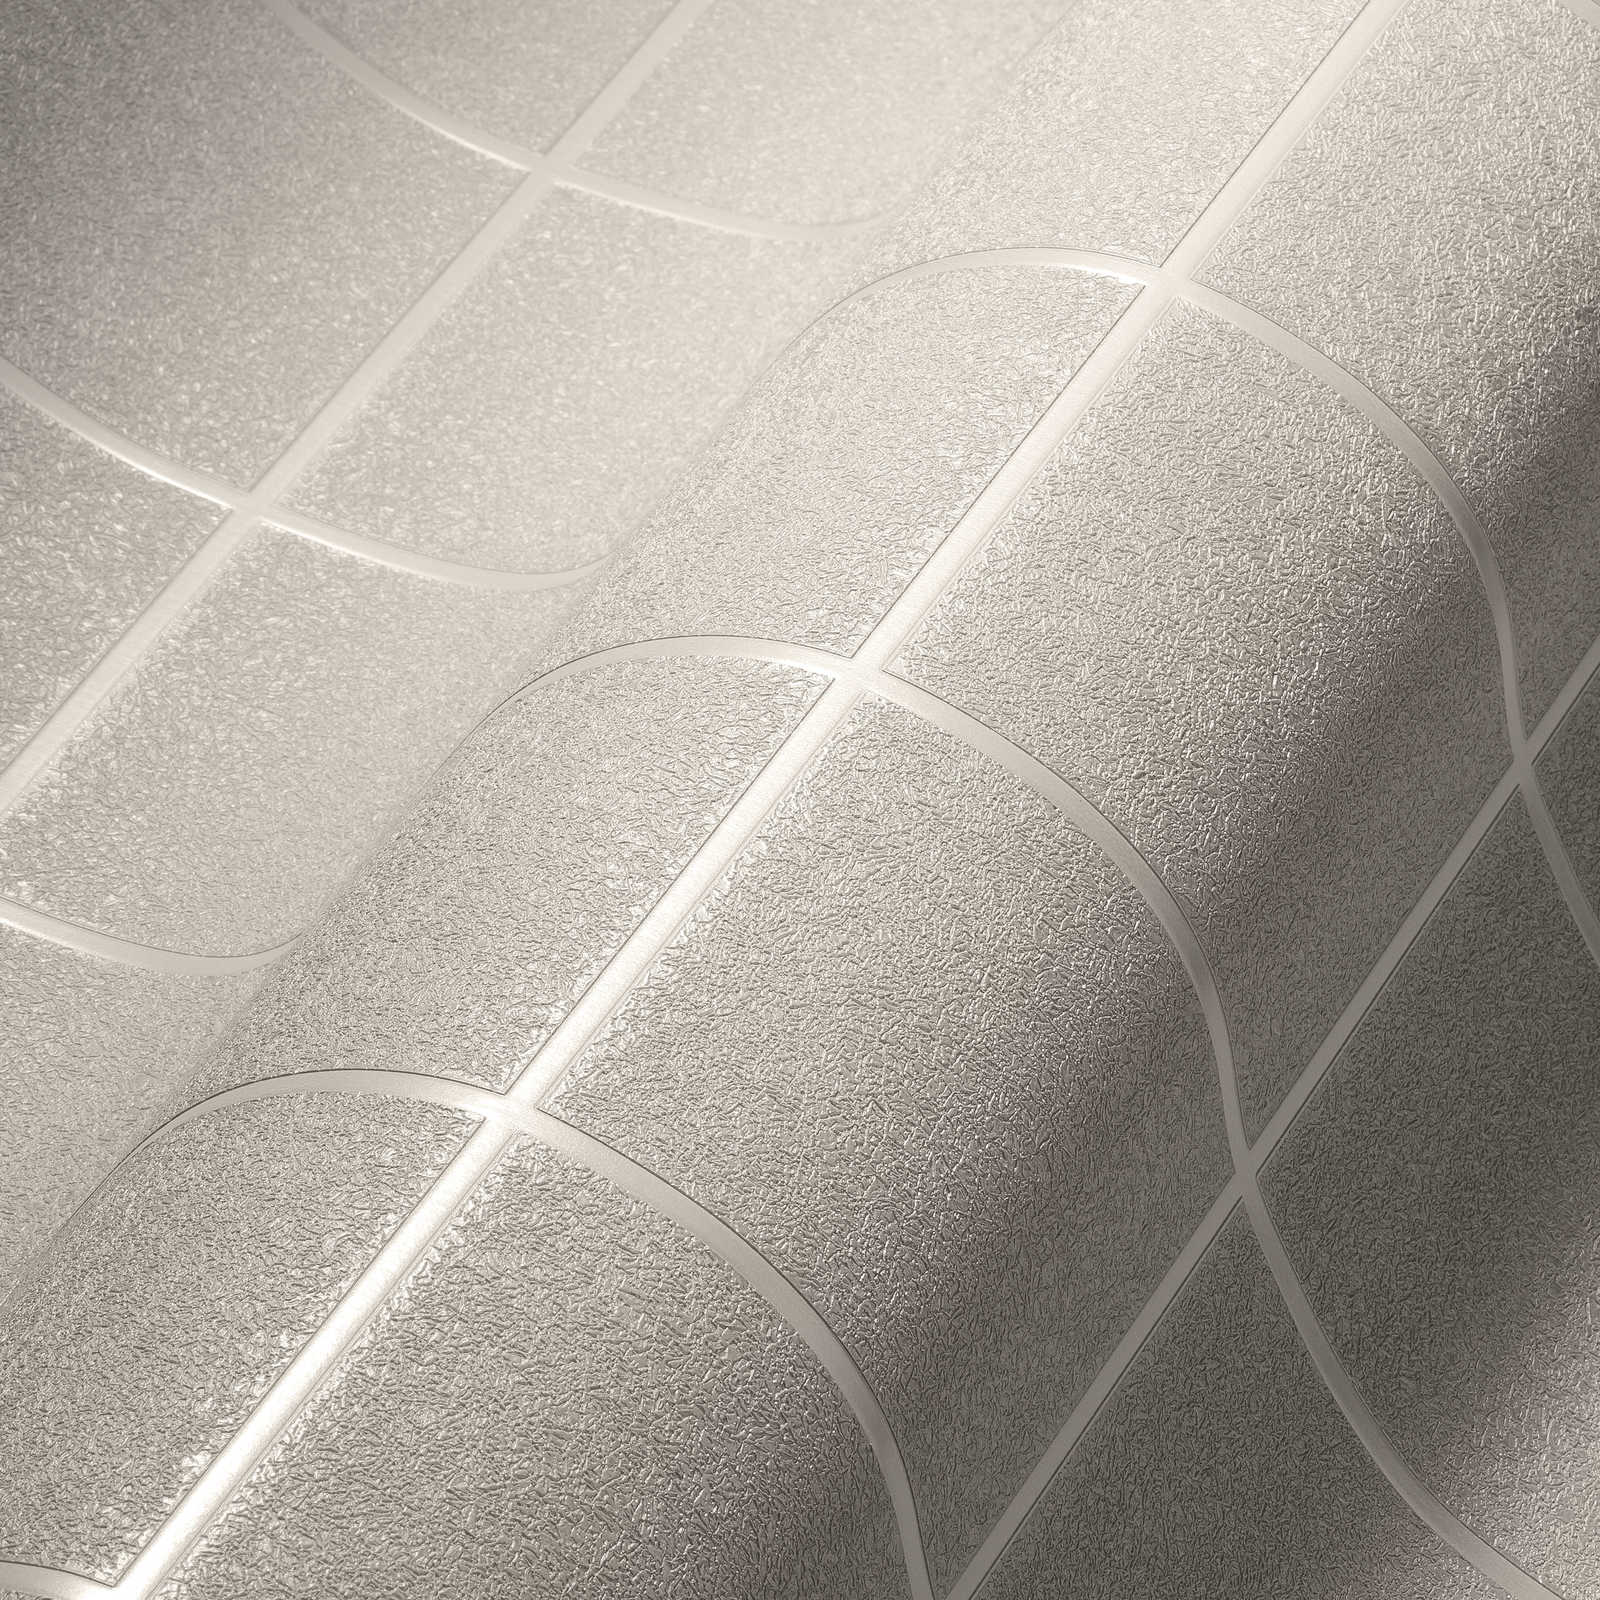             Carta da parati con motivo a piastrelle ed effetto 3D, screziato - argento, grigio, bianco
        